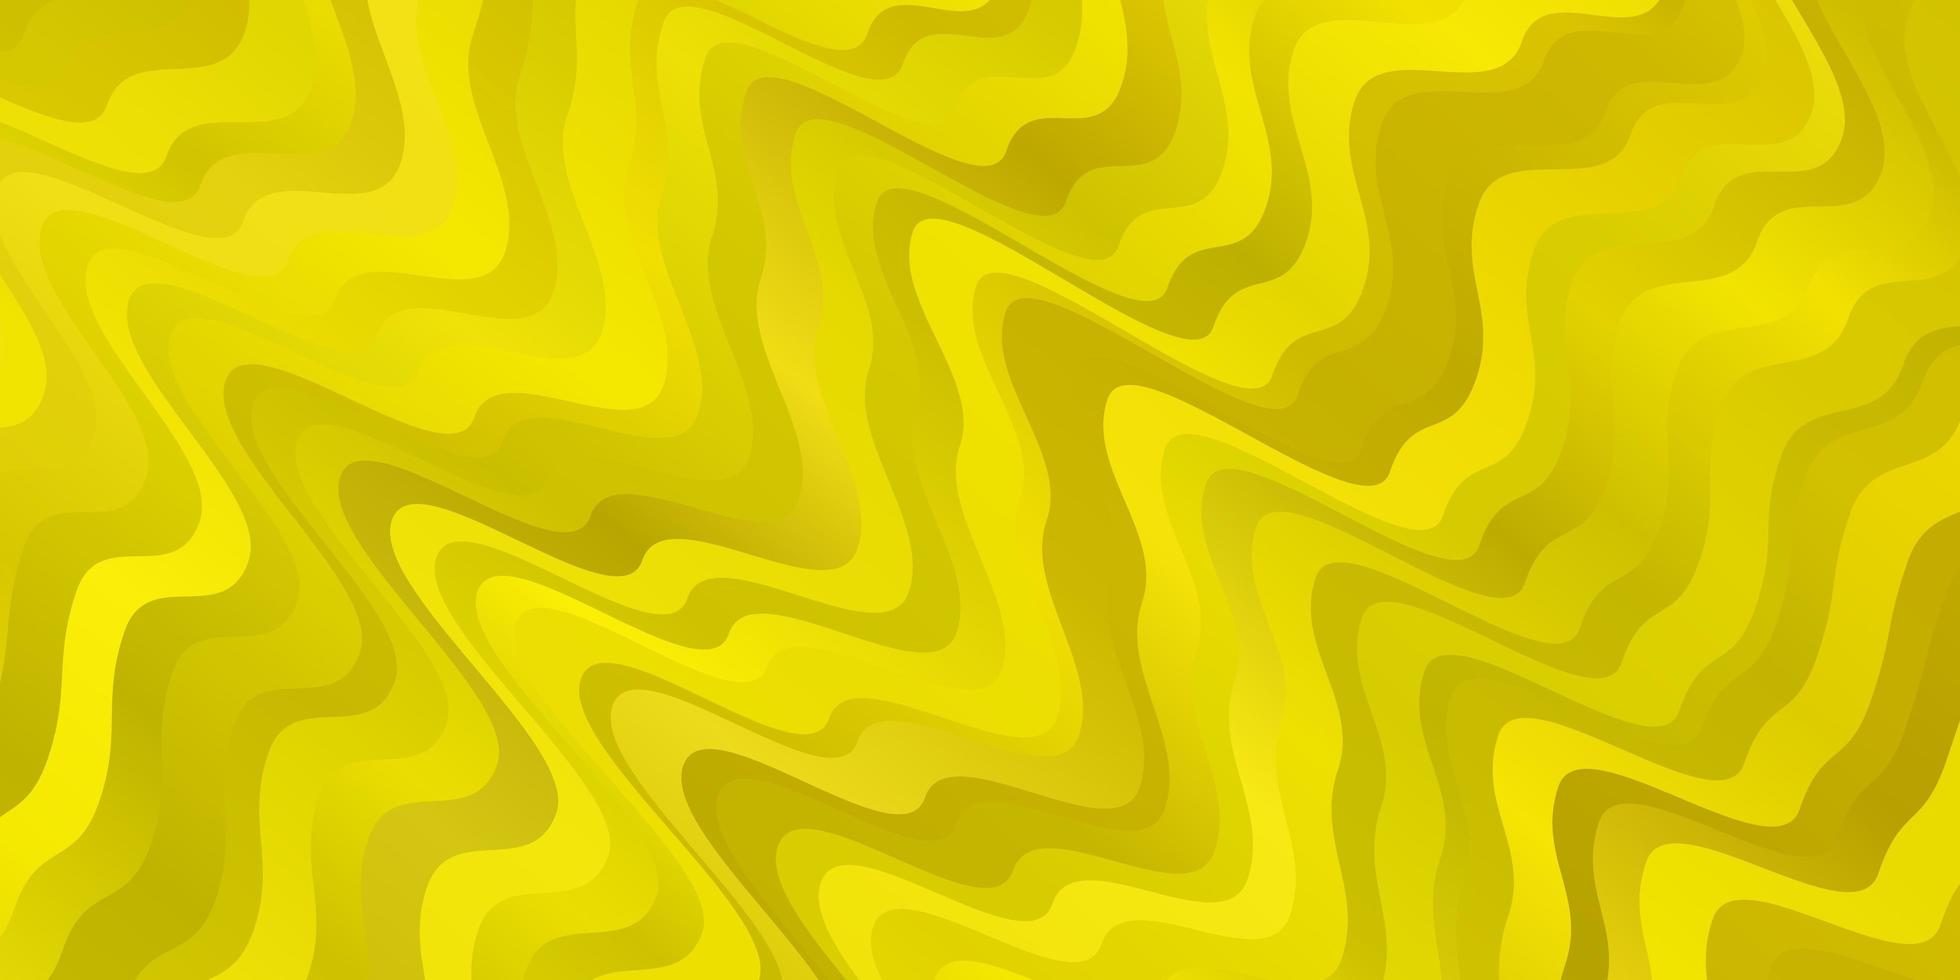 plantilla de vector amarillo claro con líneas torcidas.